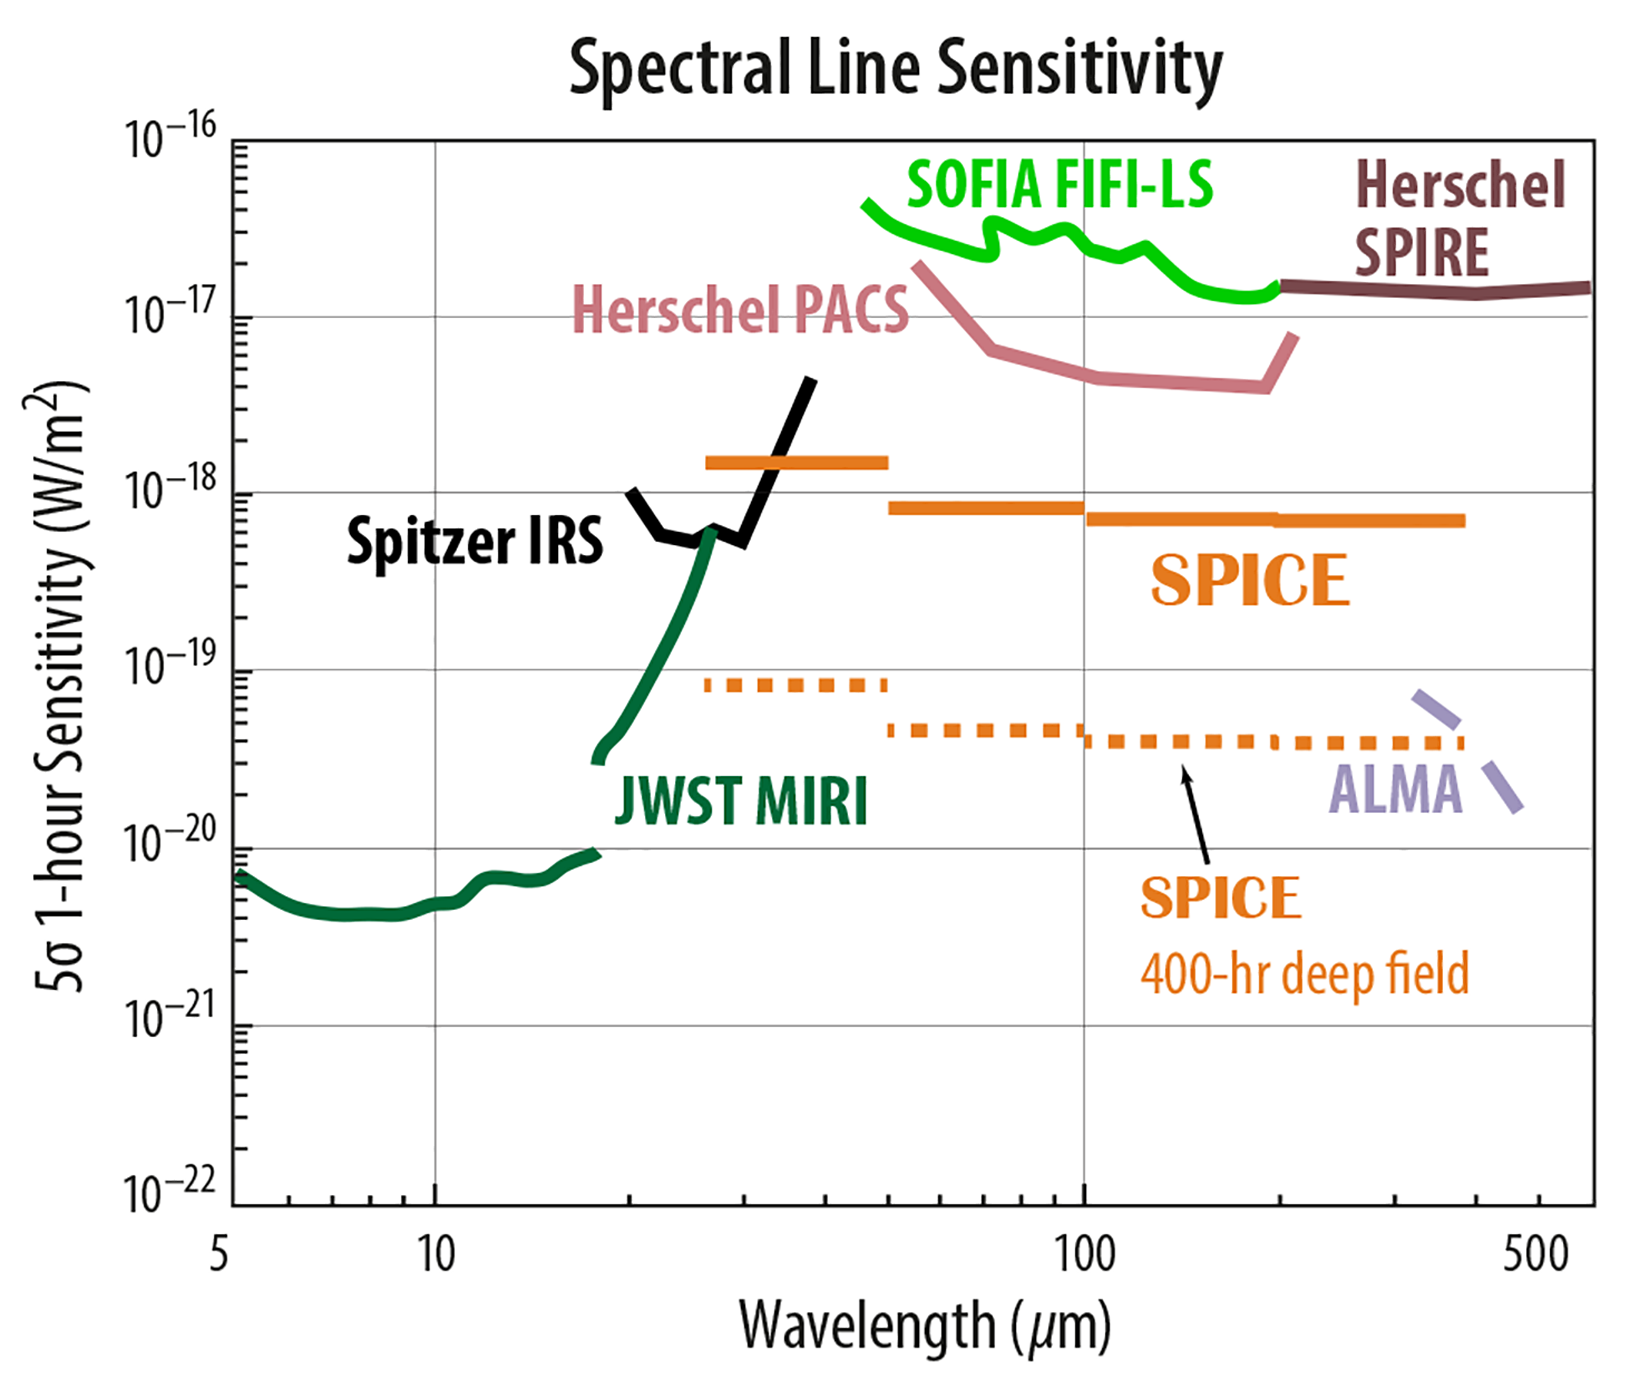 Spectral Line Sensitivity graph